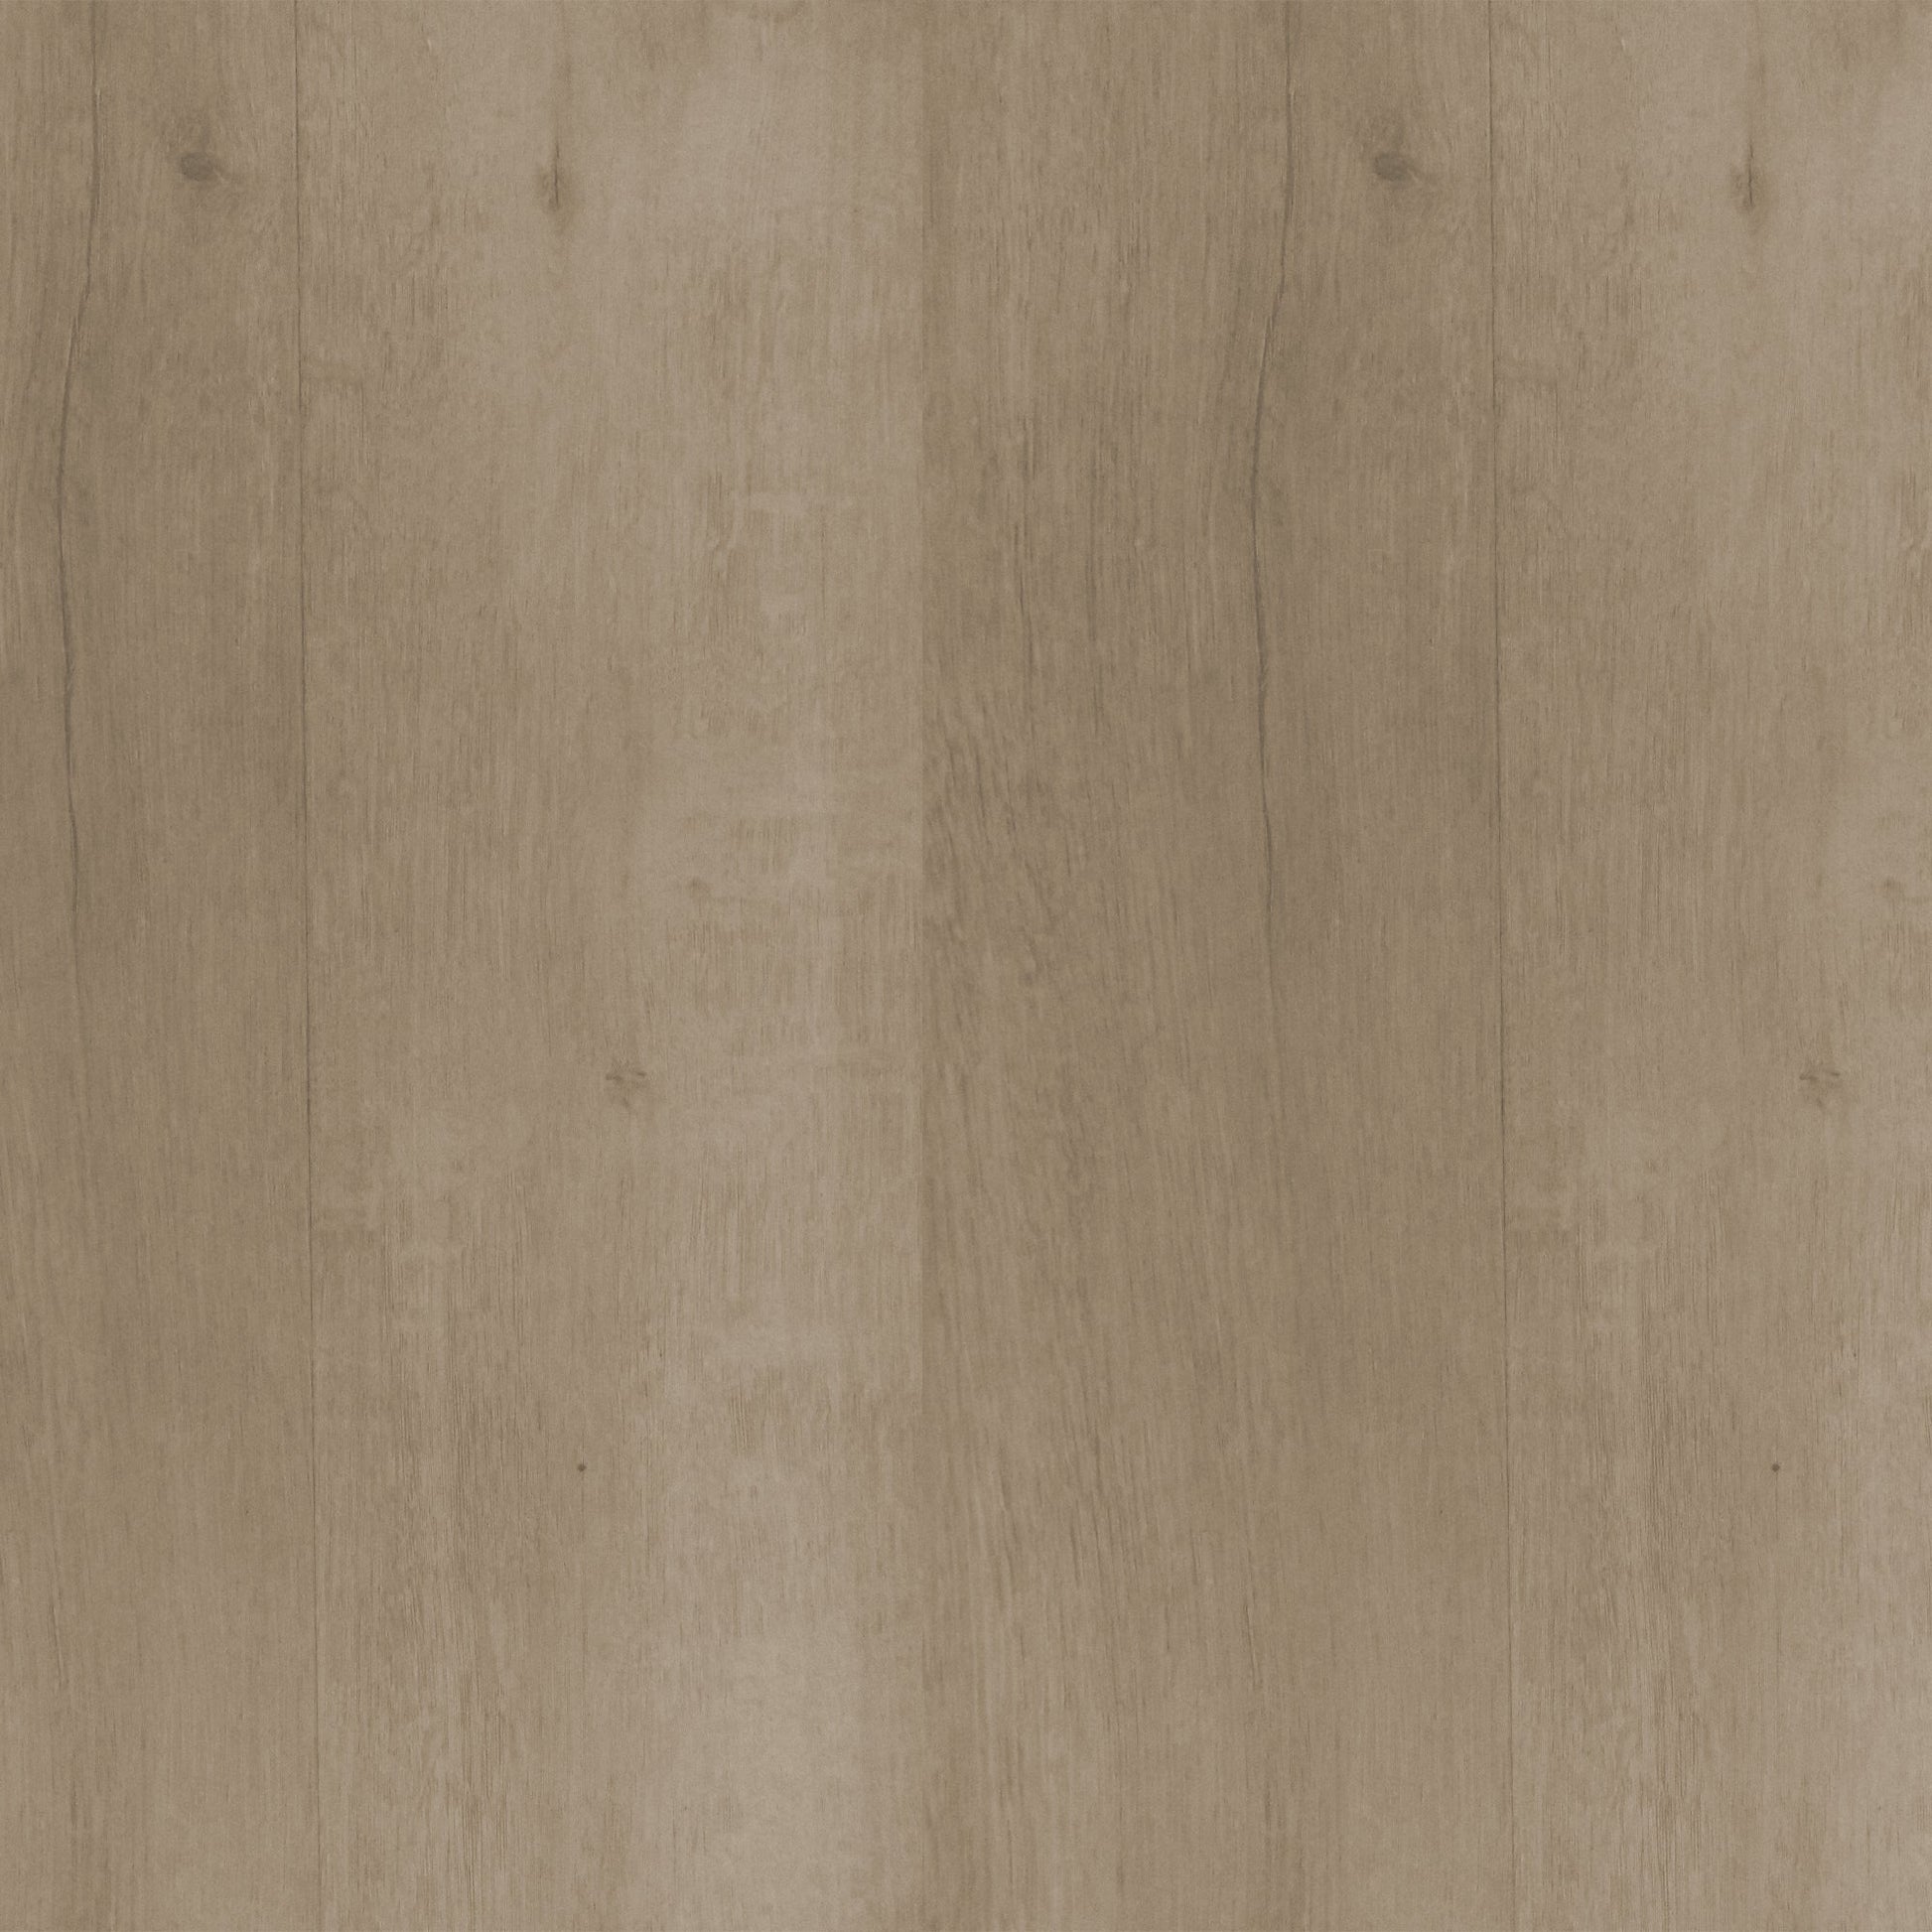 Maple - Sample Hybrid Flooring by KLD Home